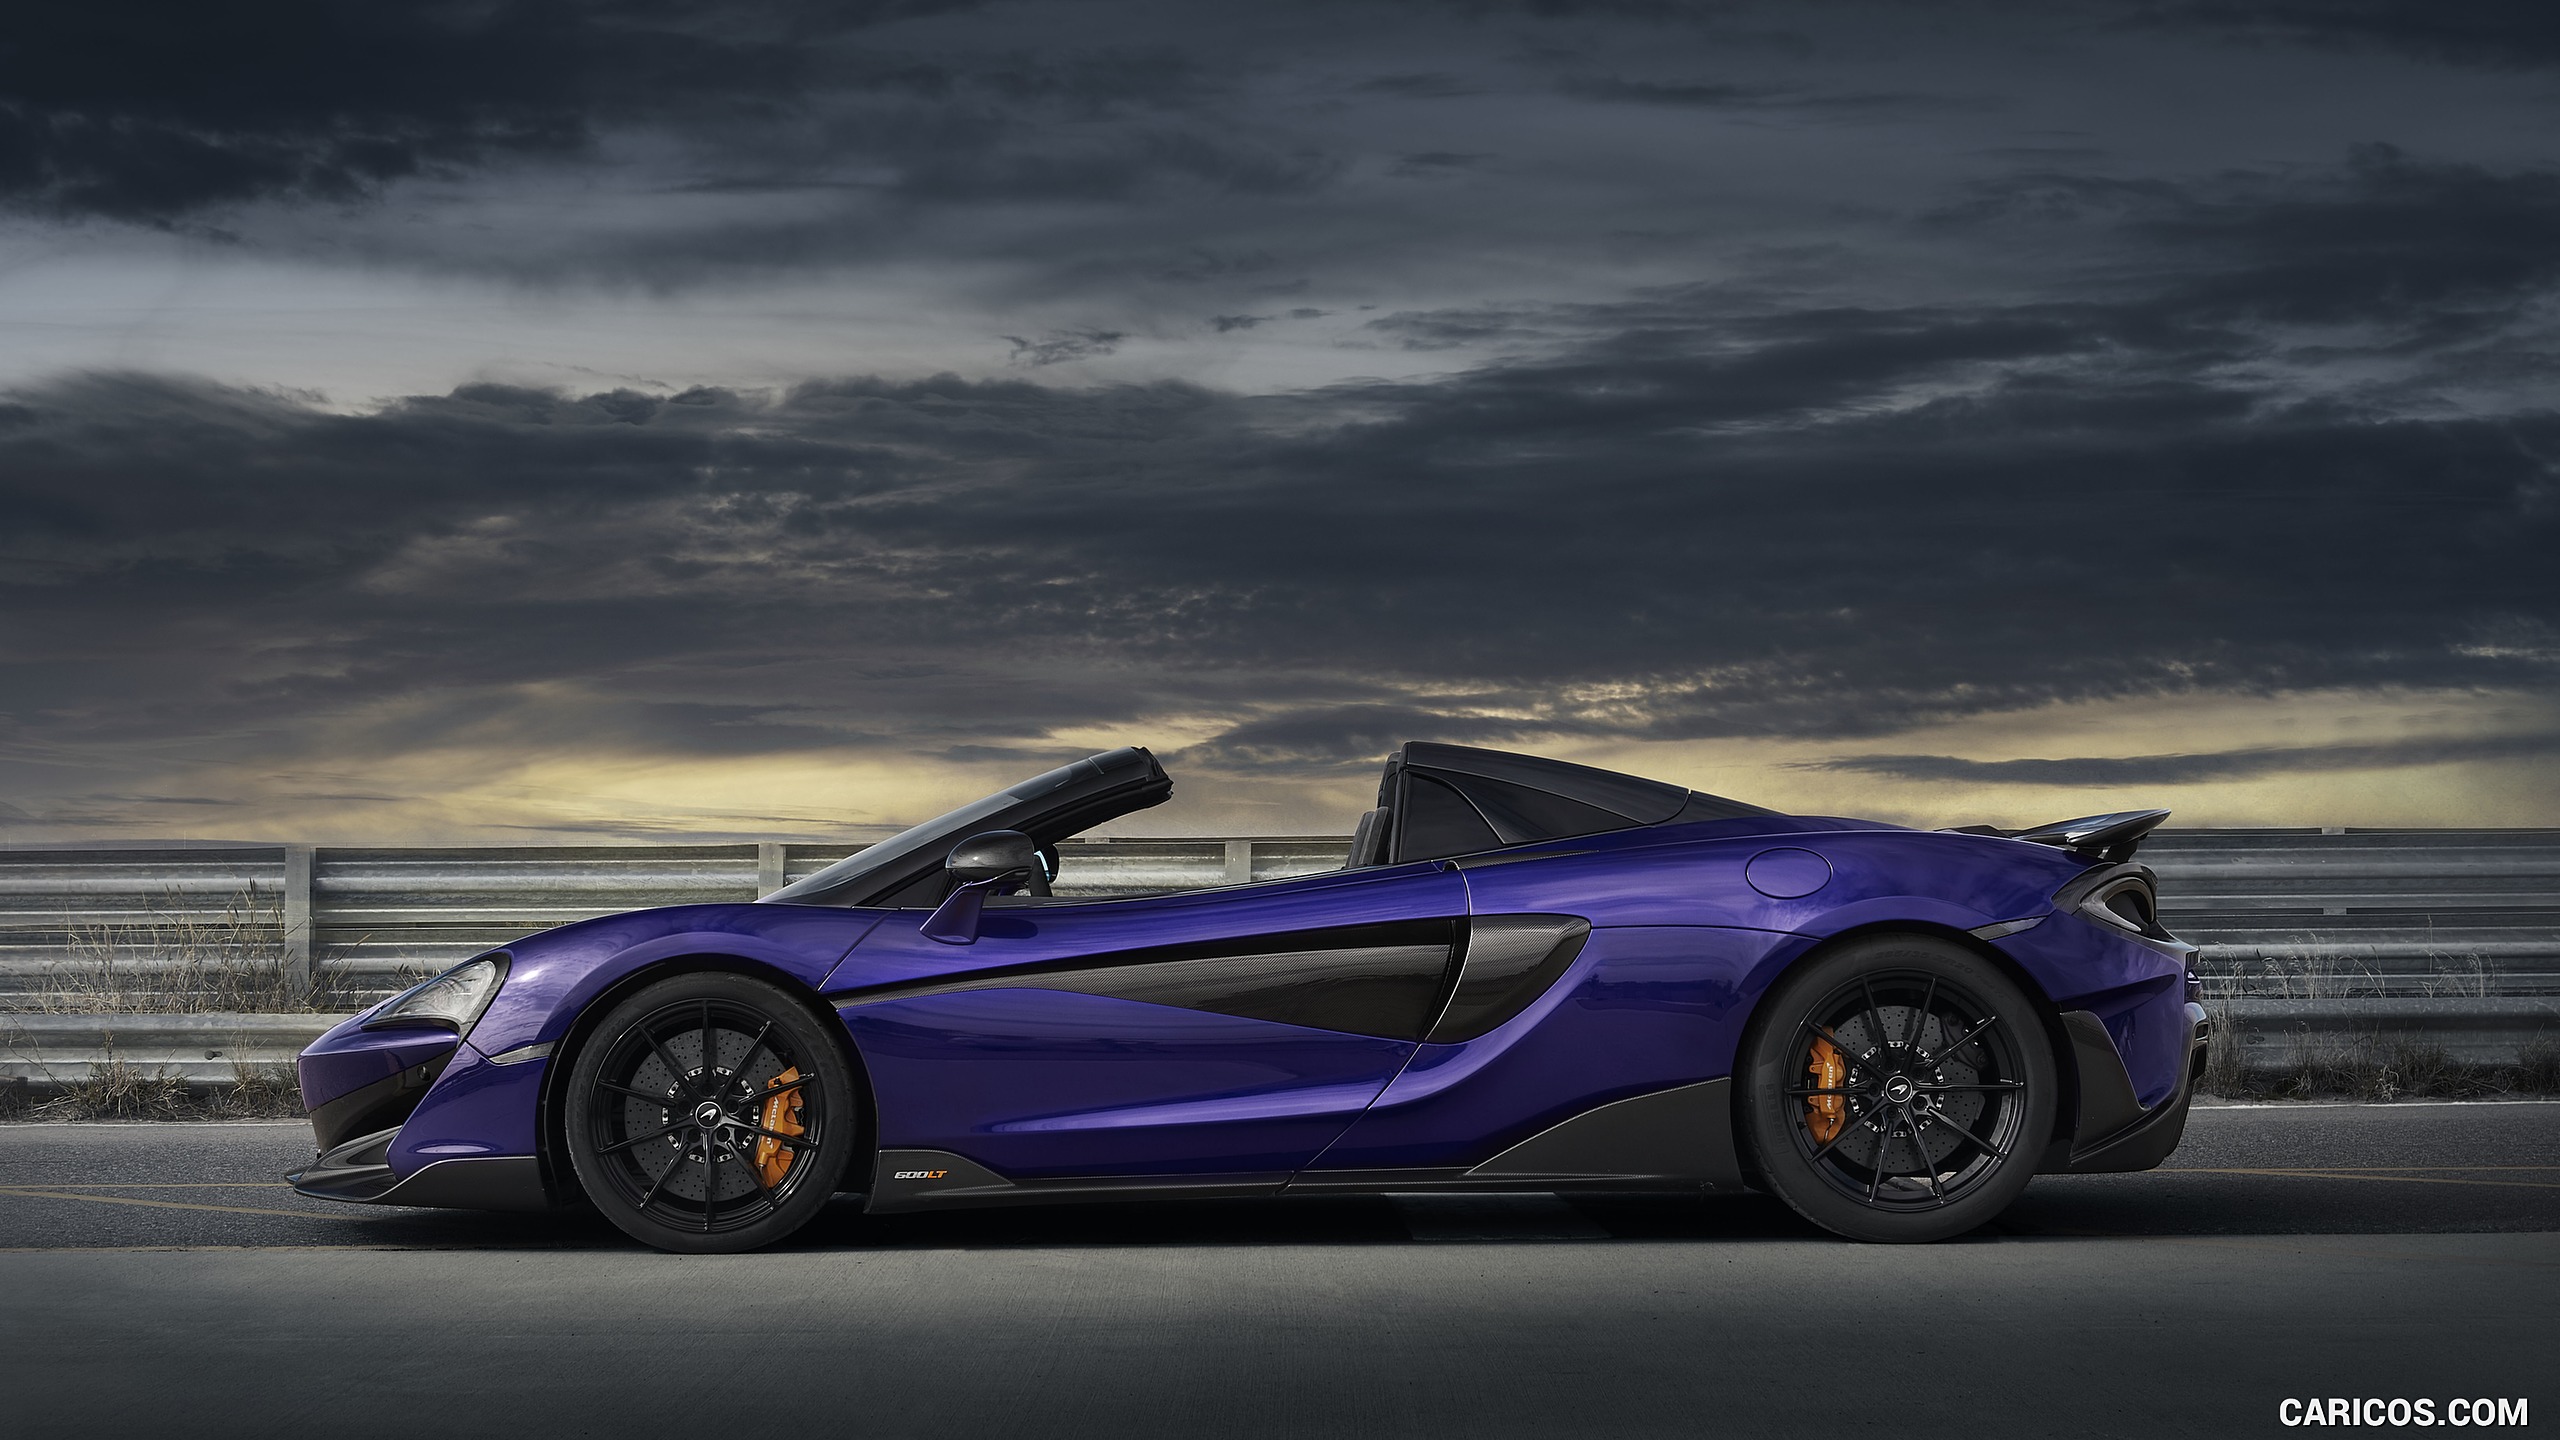 2020 McLaren 600LT Spider (Color: Lantana Purple) - Side, #63 of 97